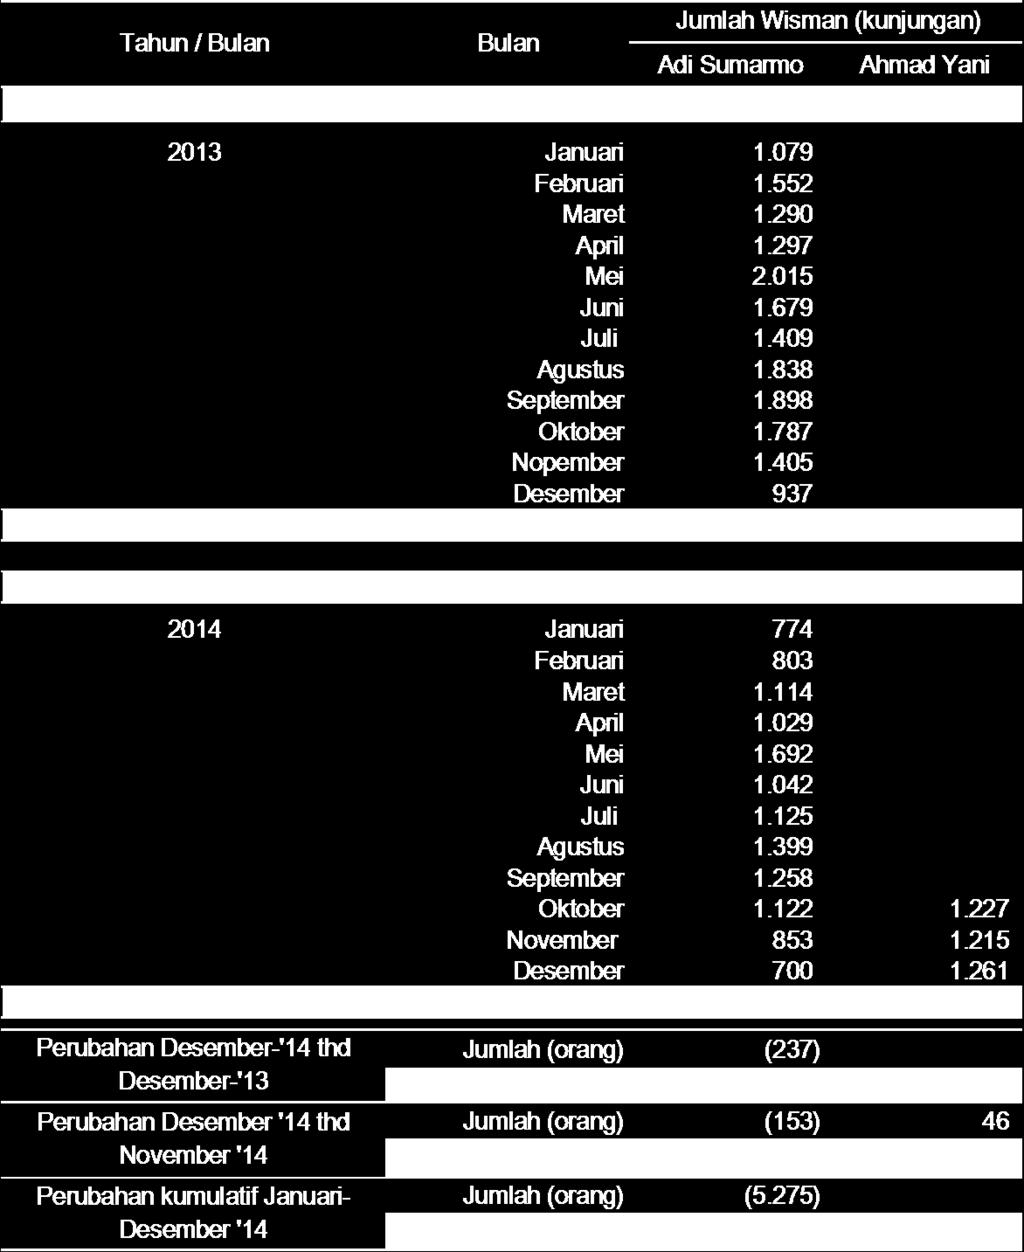 Tabel 2: Jumlah Wisatawan Mancanegara (Wisman) Di Jawa Tengah Tahun 2013 dan Desember 2014 Dilihat dari asal negara, jumlah wisman terbanyak yang berkunjung